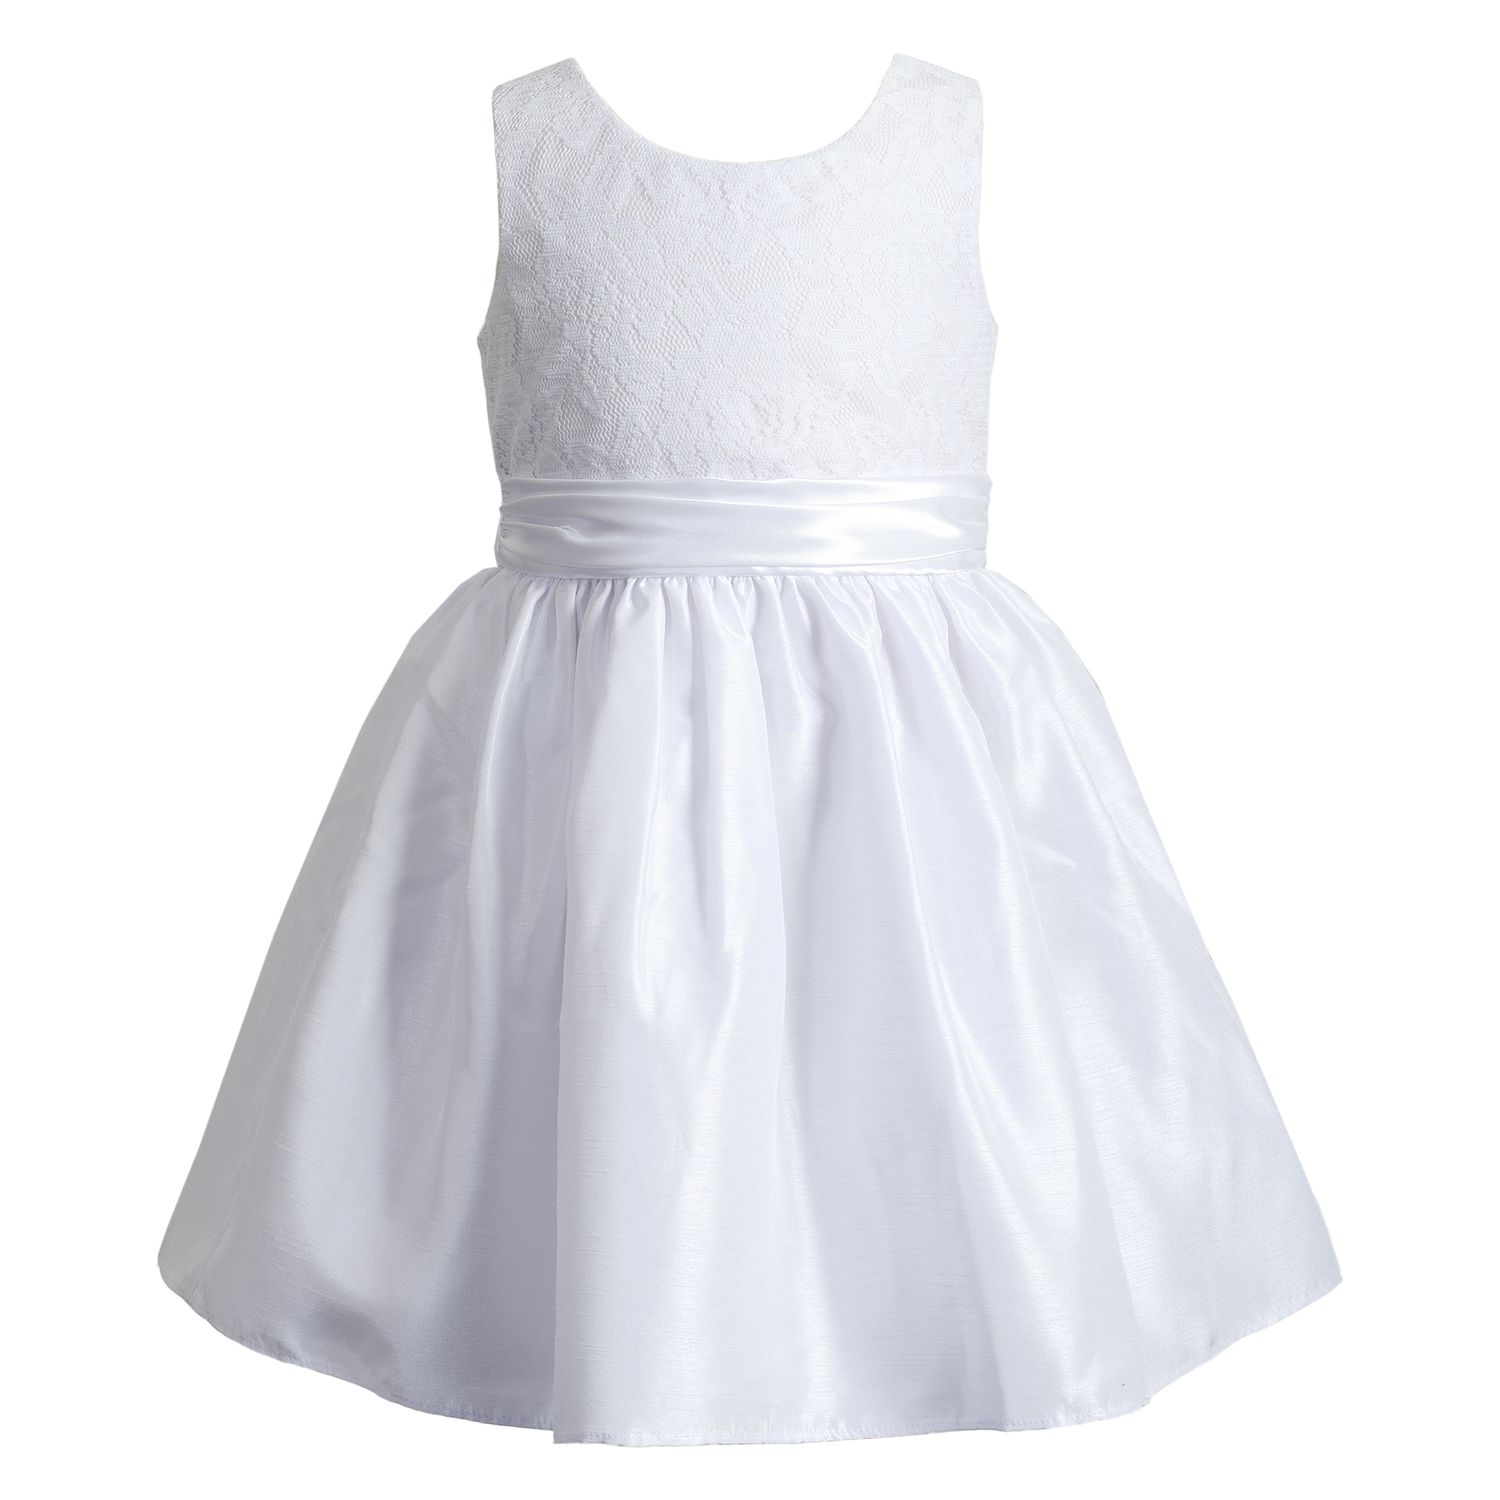 white dresses at kohls